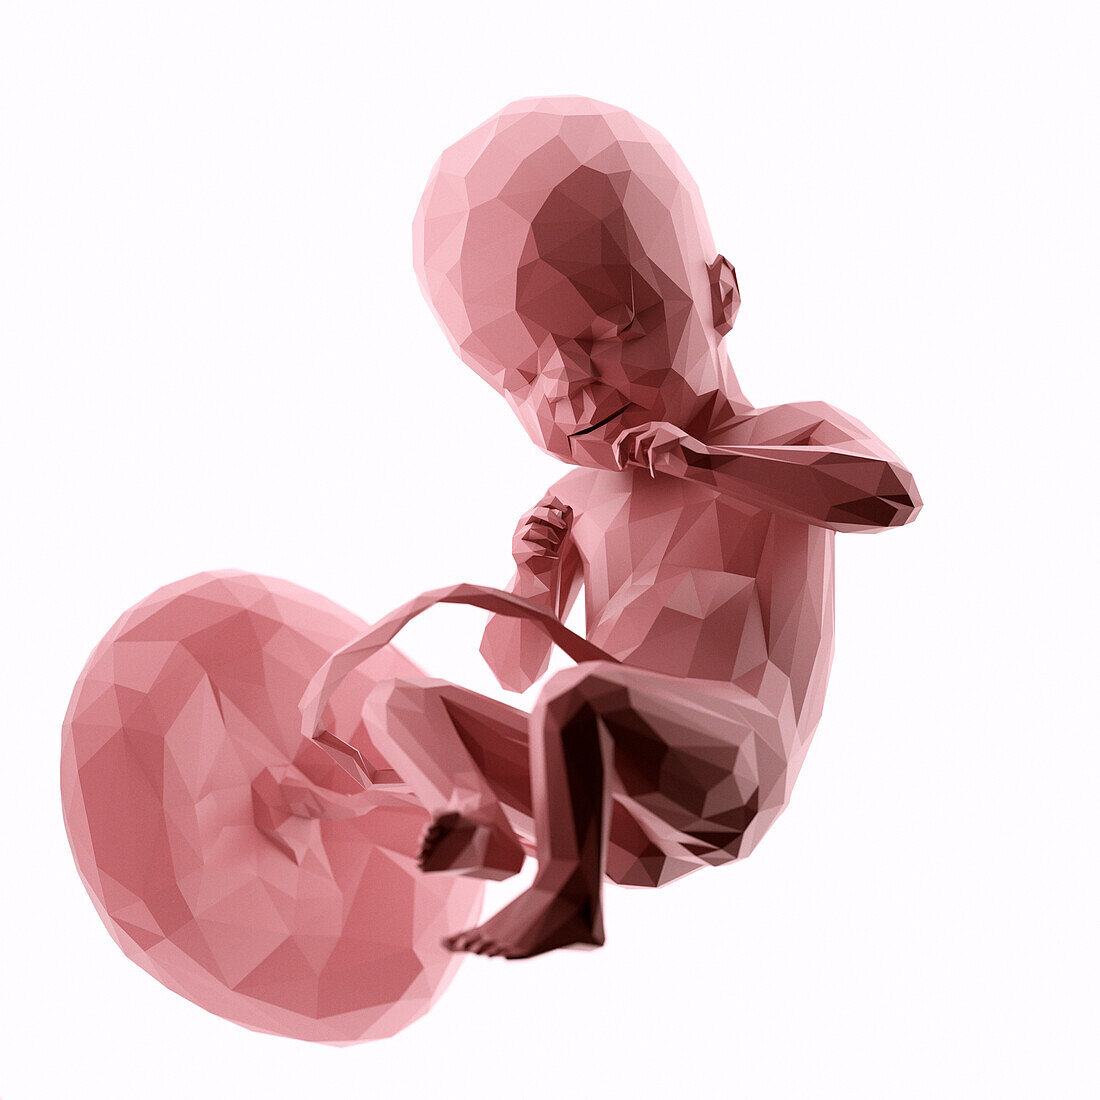 Human fetus at week 21, abstract illustration